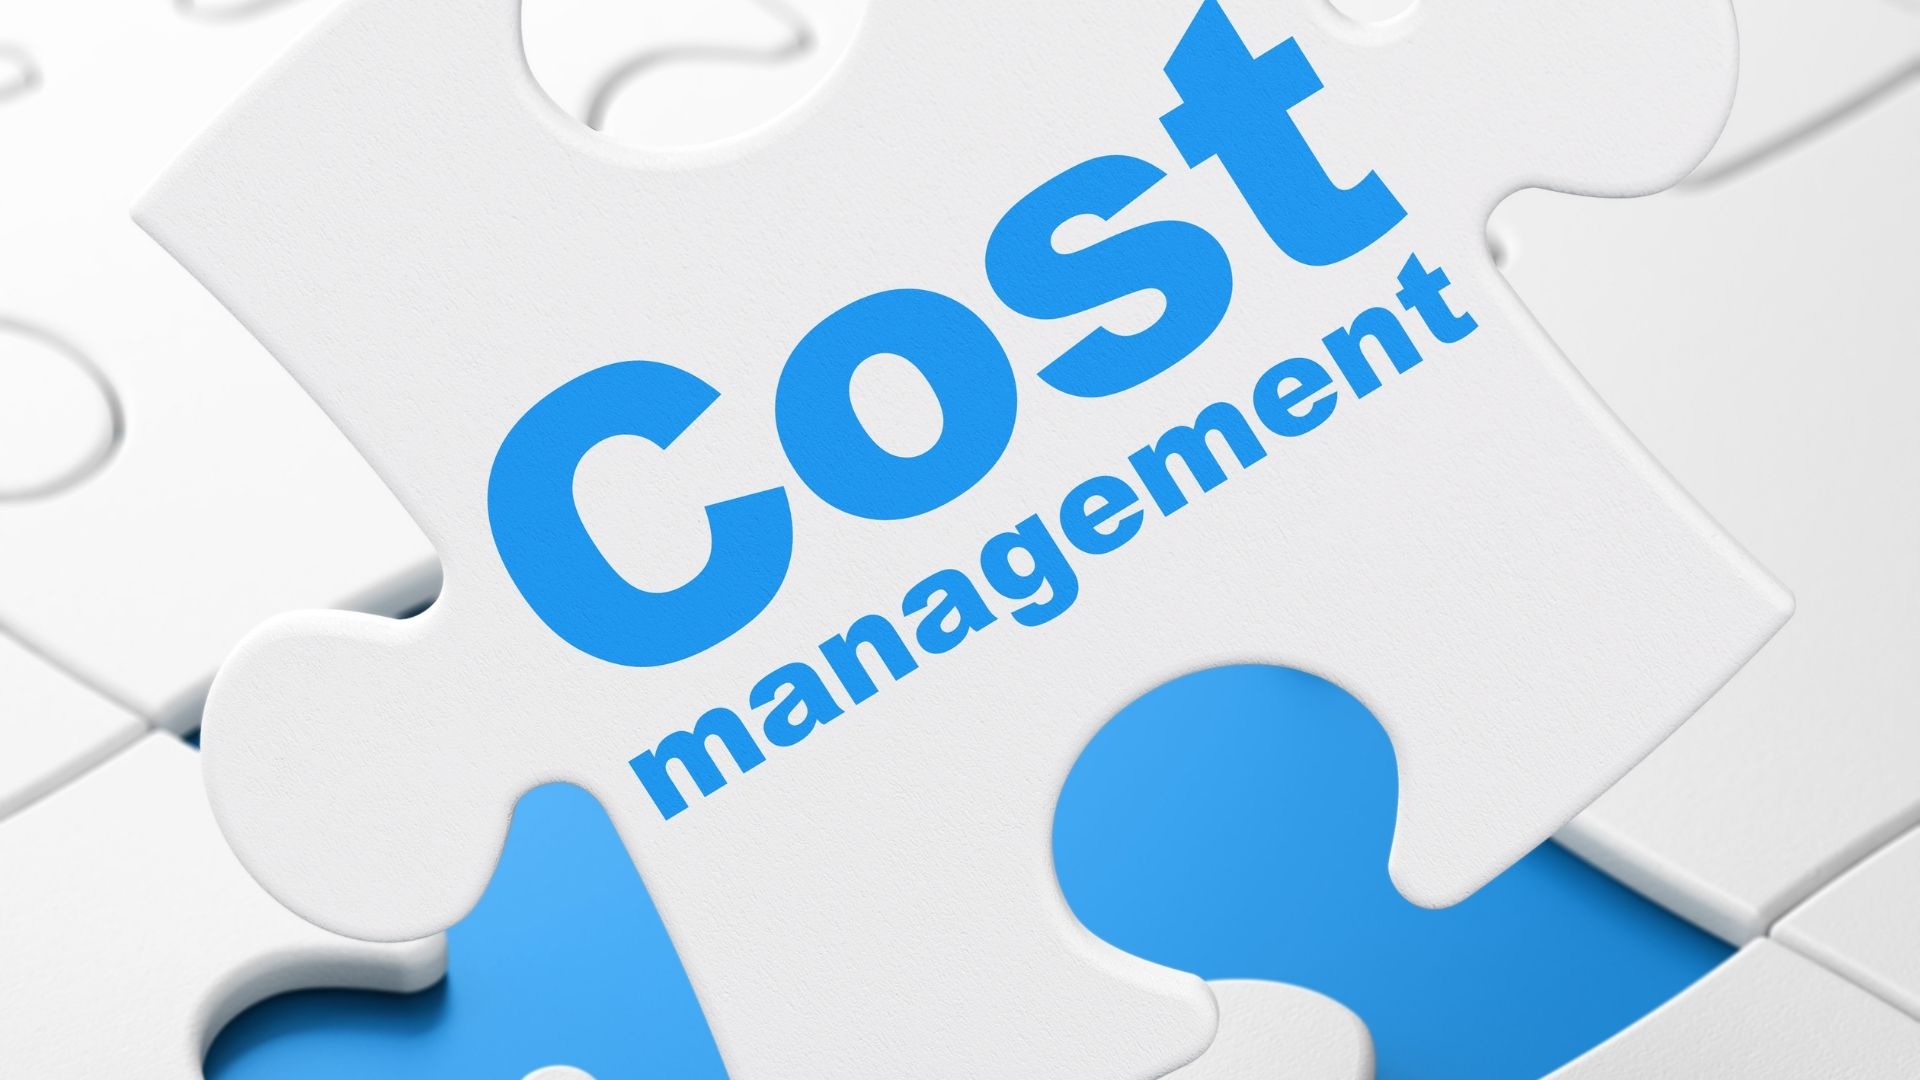 Cost Management puzzle